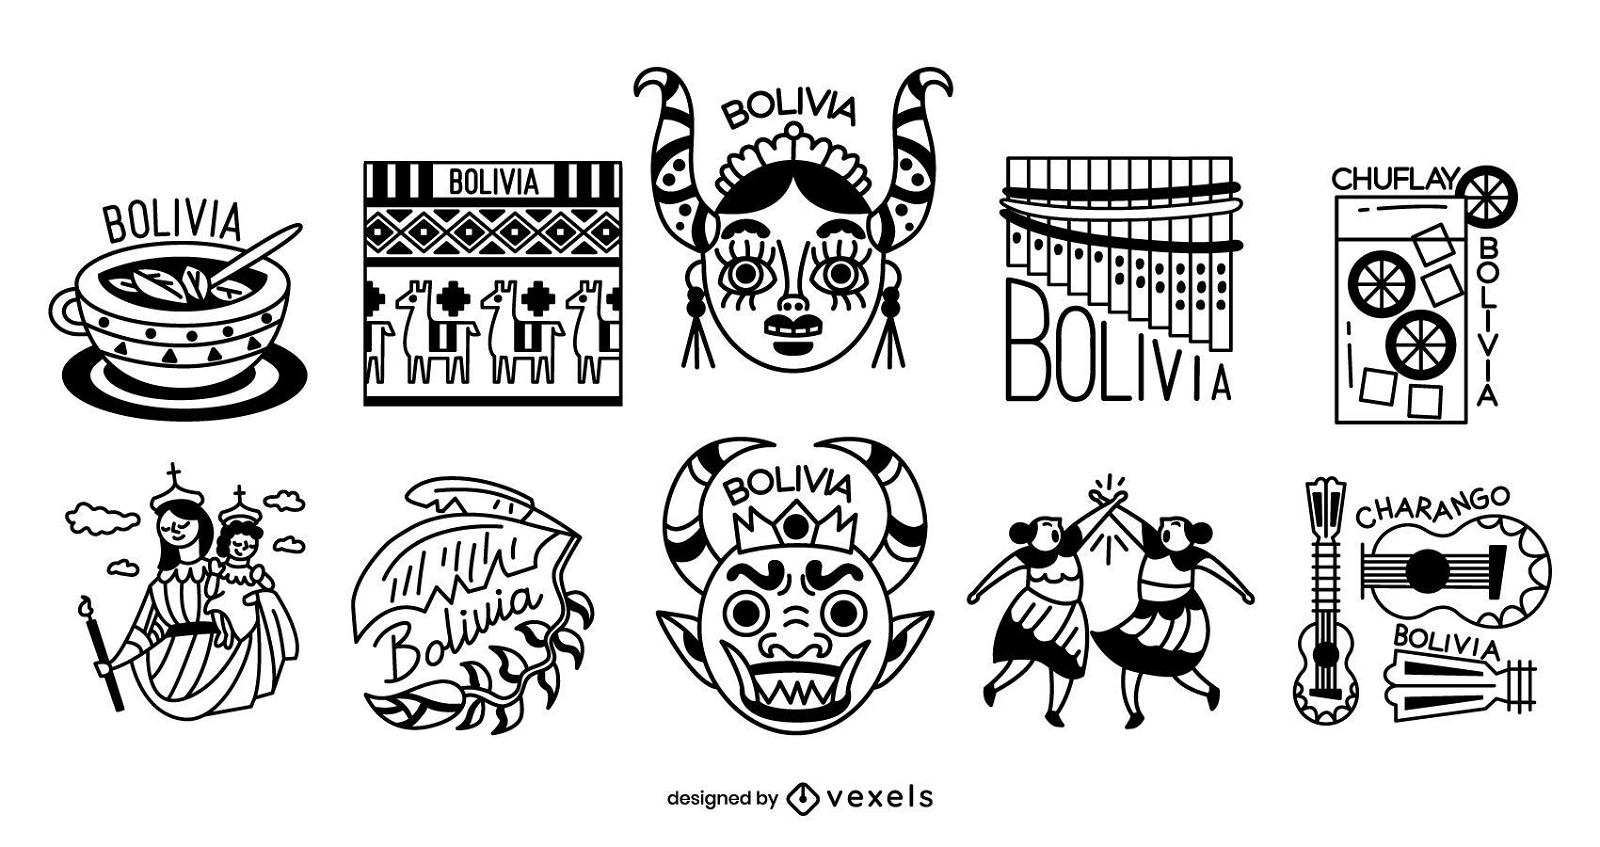 Bolivia Stroke Elements Design Pack